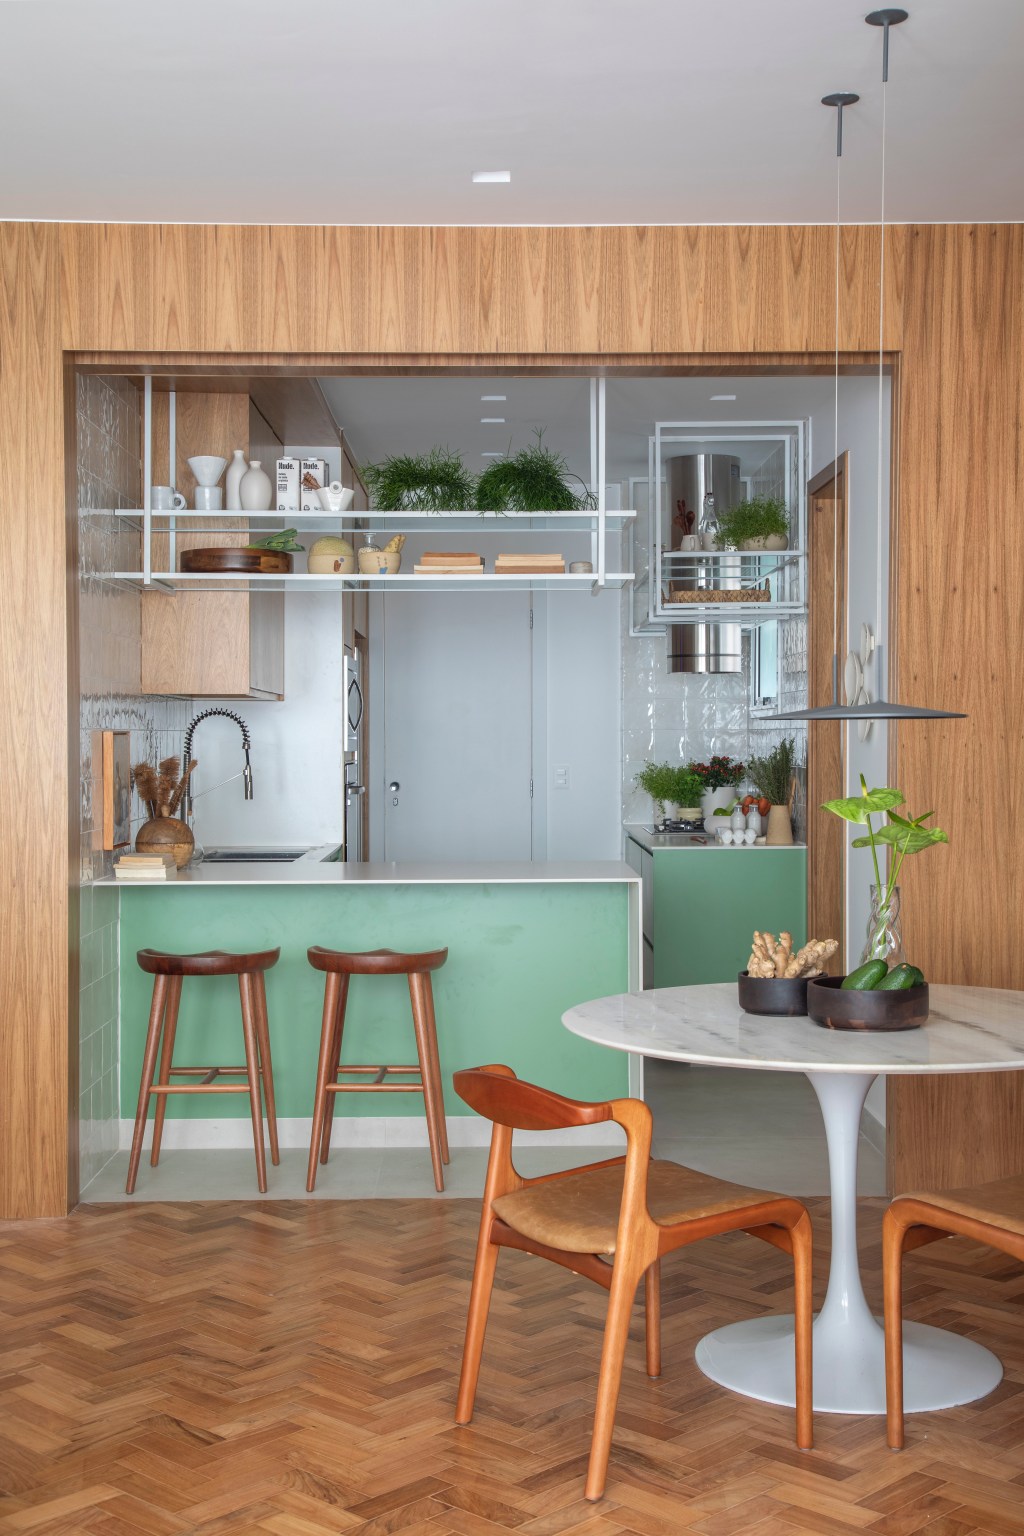 Apartamento de 110 m² ganha décor aconchegante com clima carioca. Projeto de Rafael Ramos. Na foto, cozinha com prateleira suspensa e marcenaria verde.